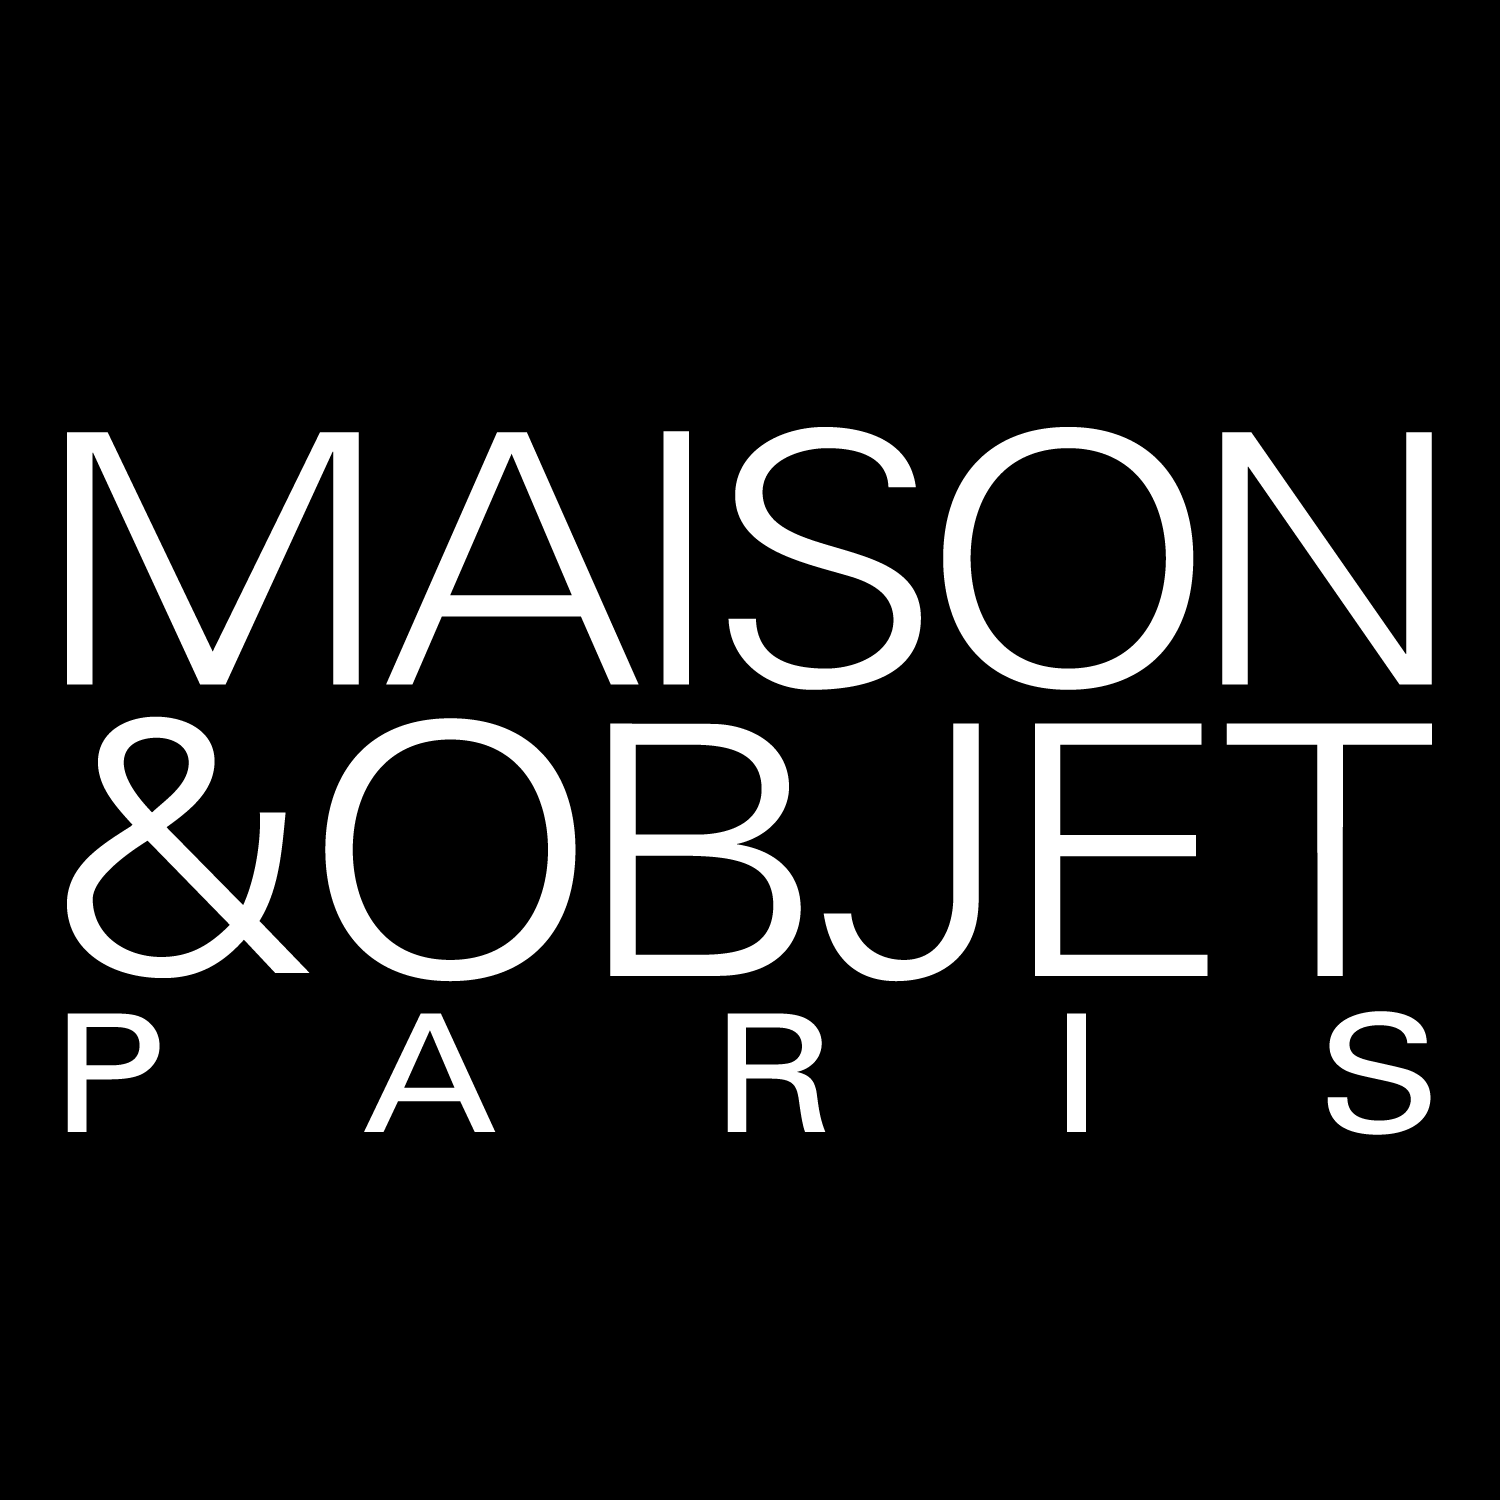 Canvas Home at Maison Objet Paris 2018